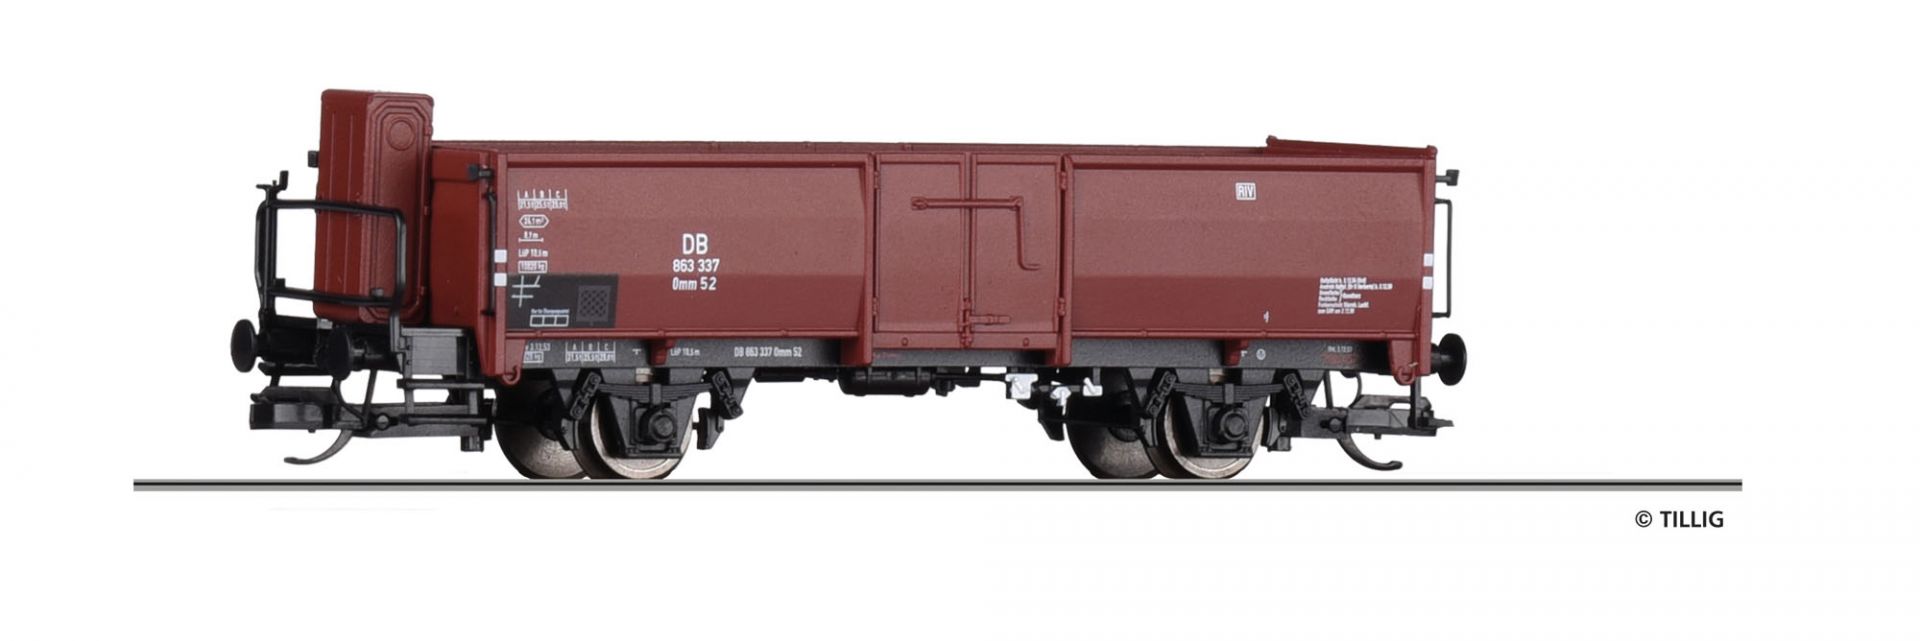 14031 | Offener Güterwagen DB